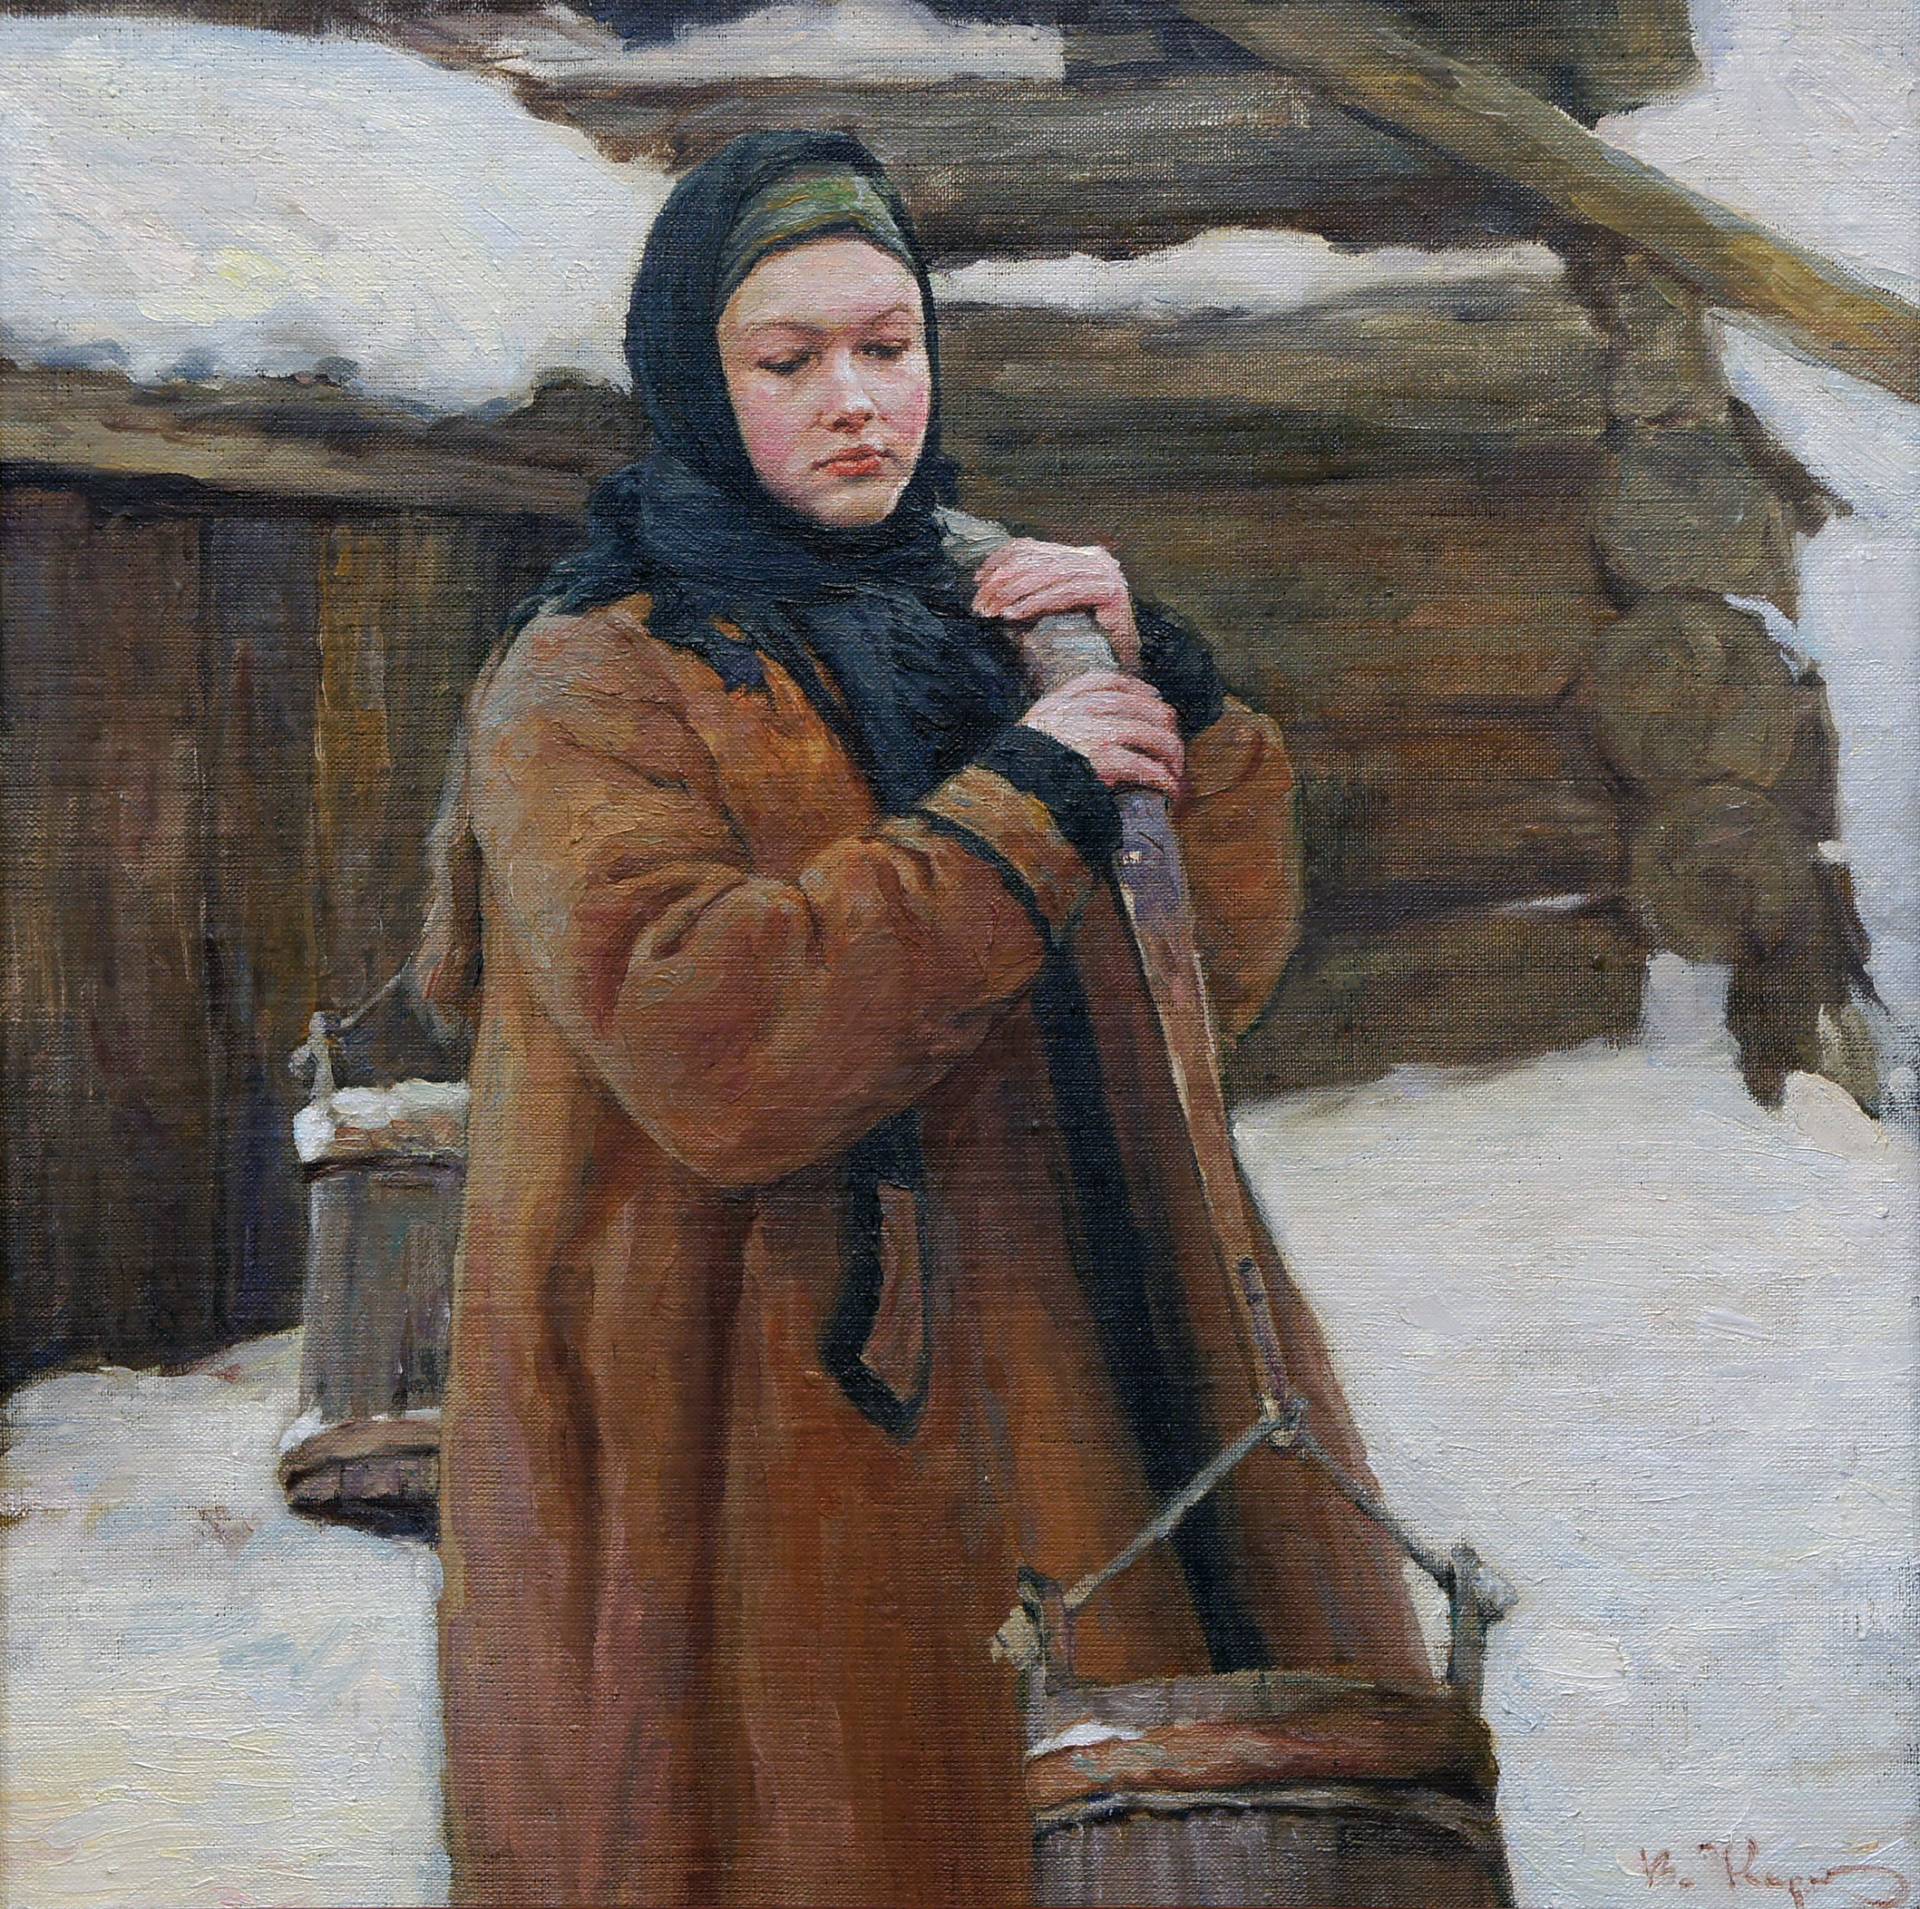 在冬天的一天 - 1, Vladimir Kirillov, 买画 油